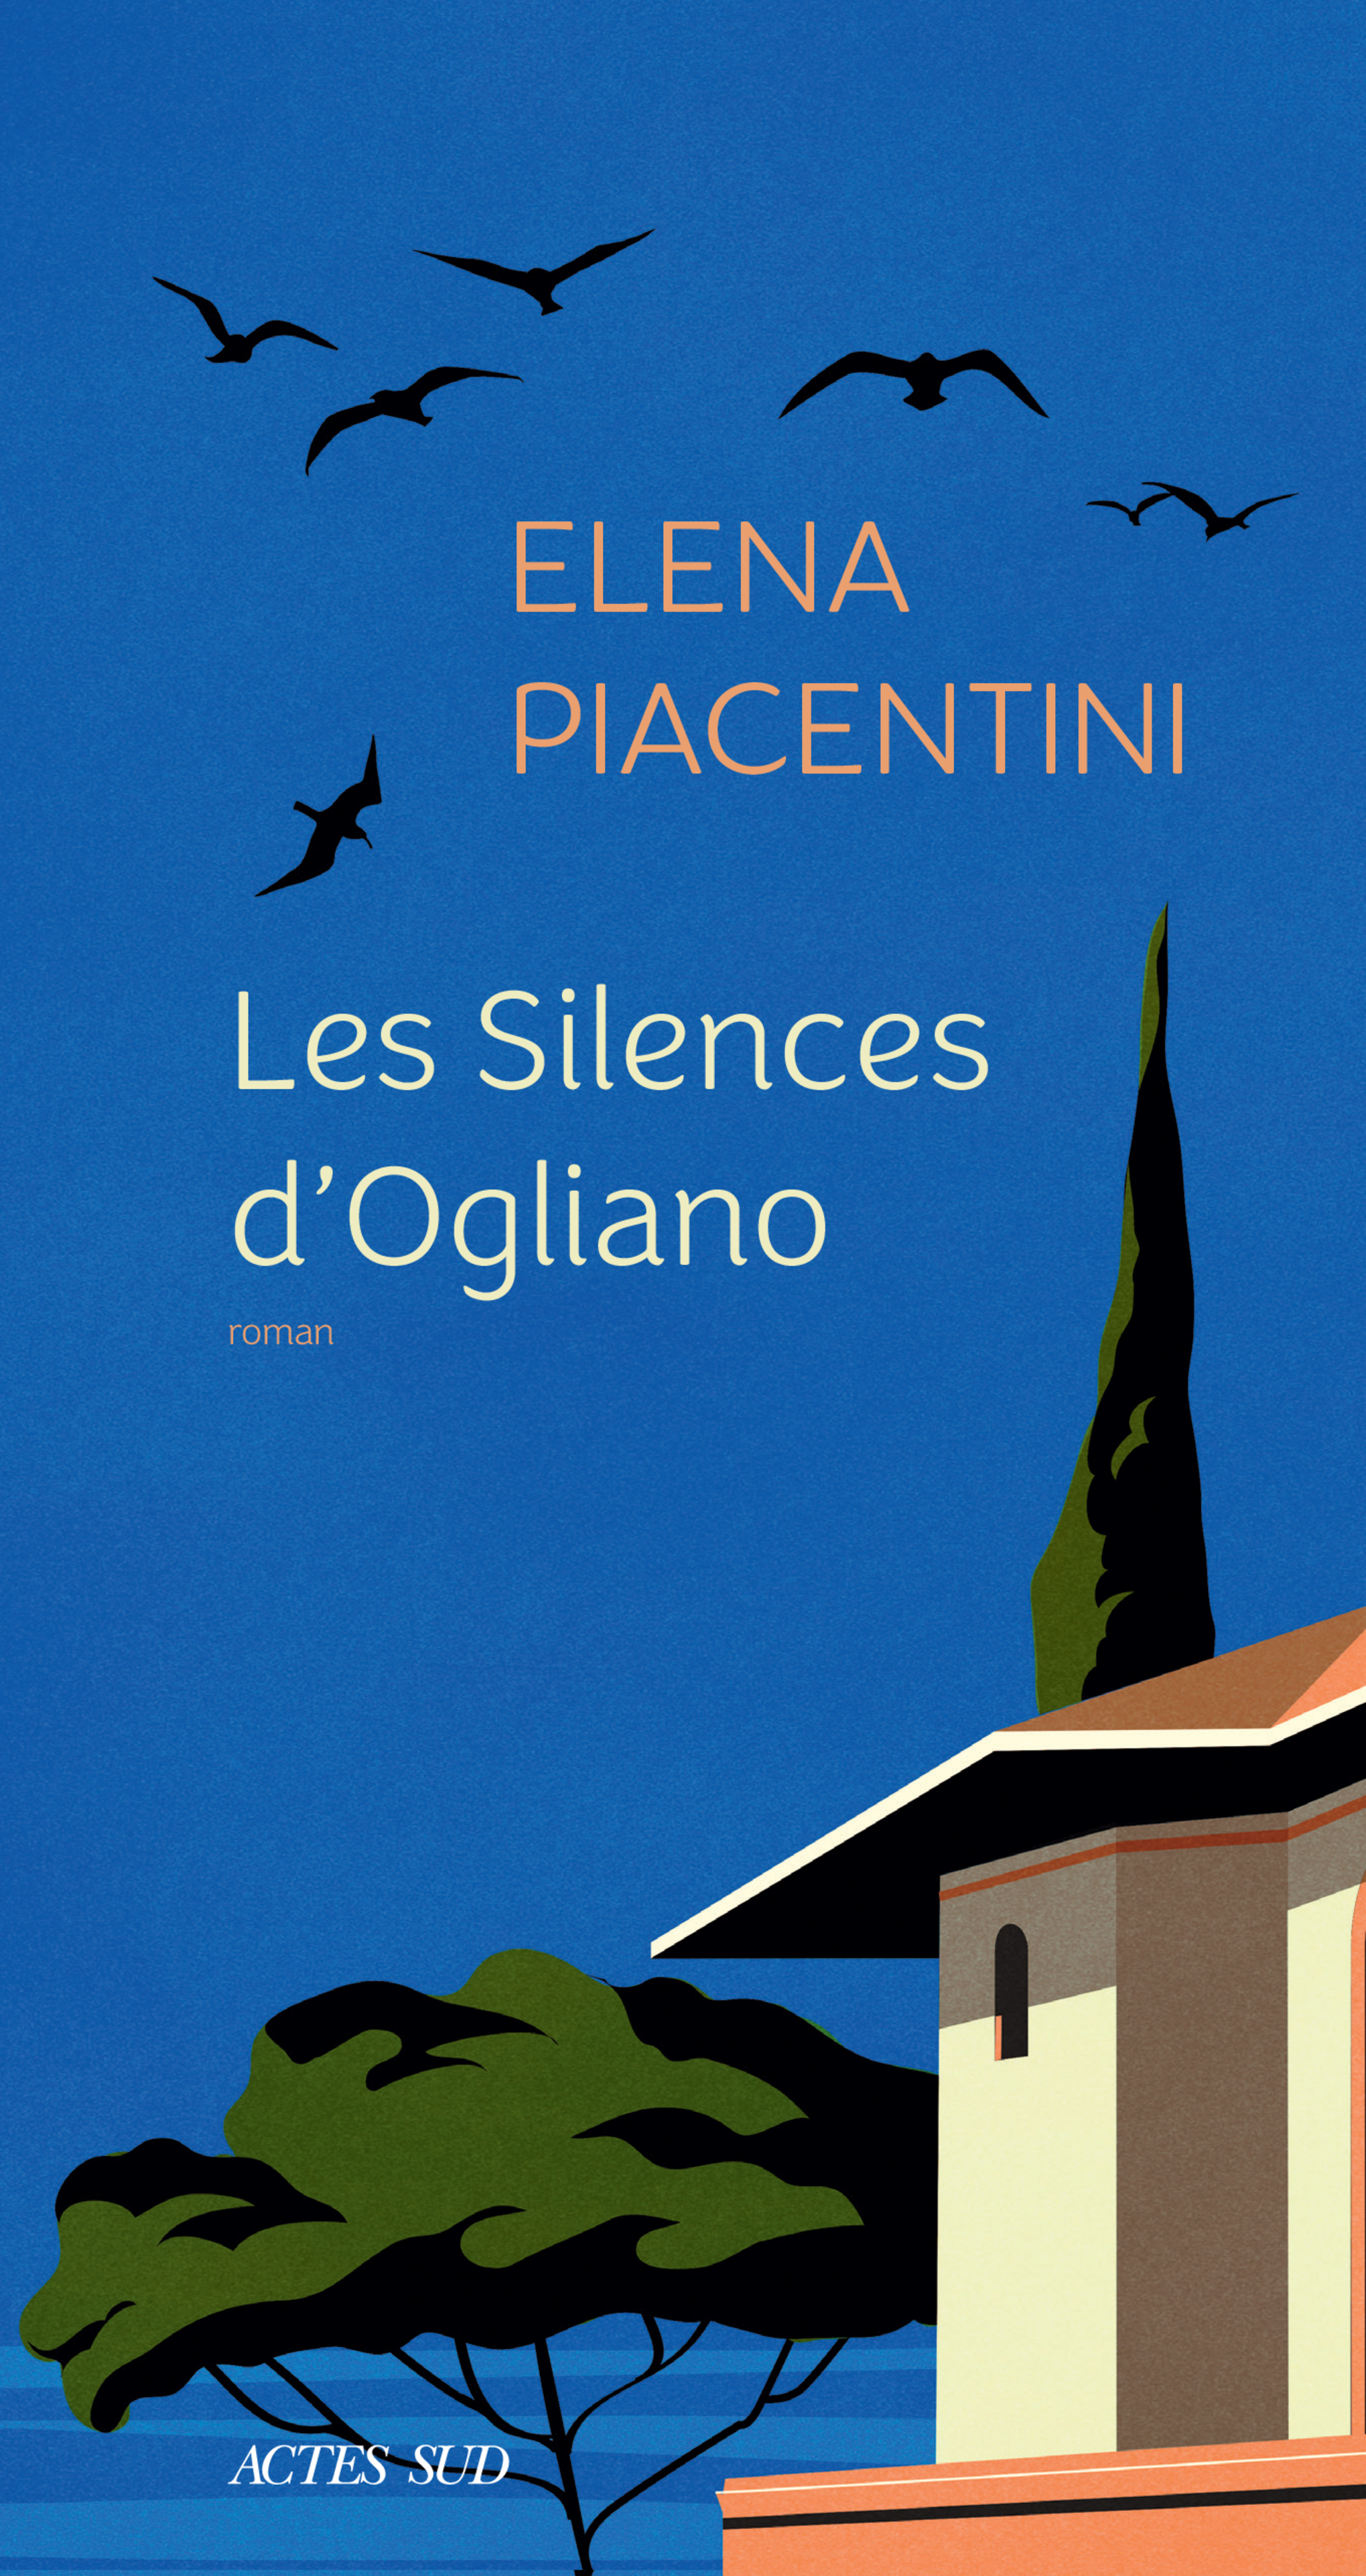 Afficher "Les Silences d'ogliano"